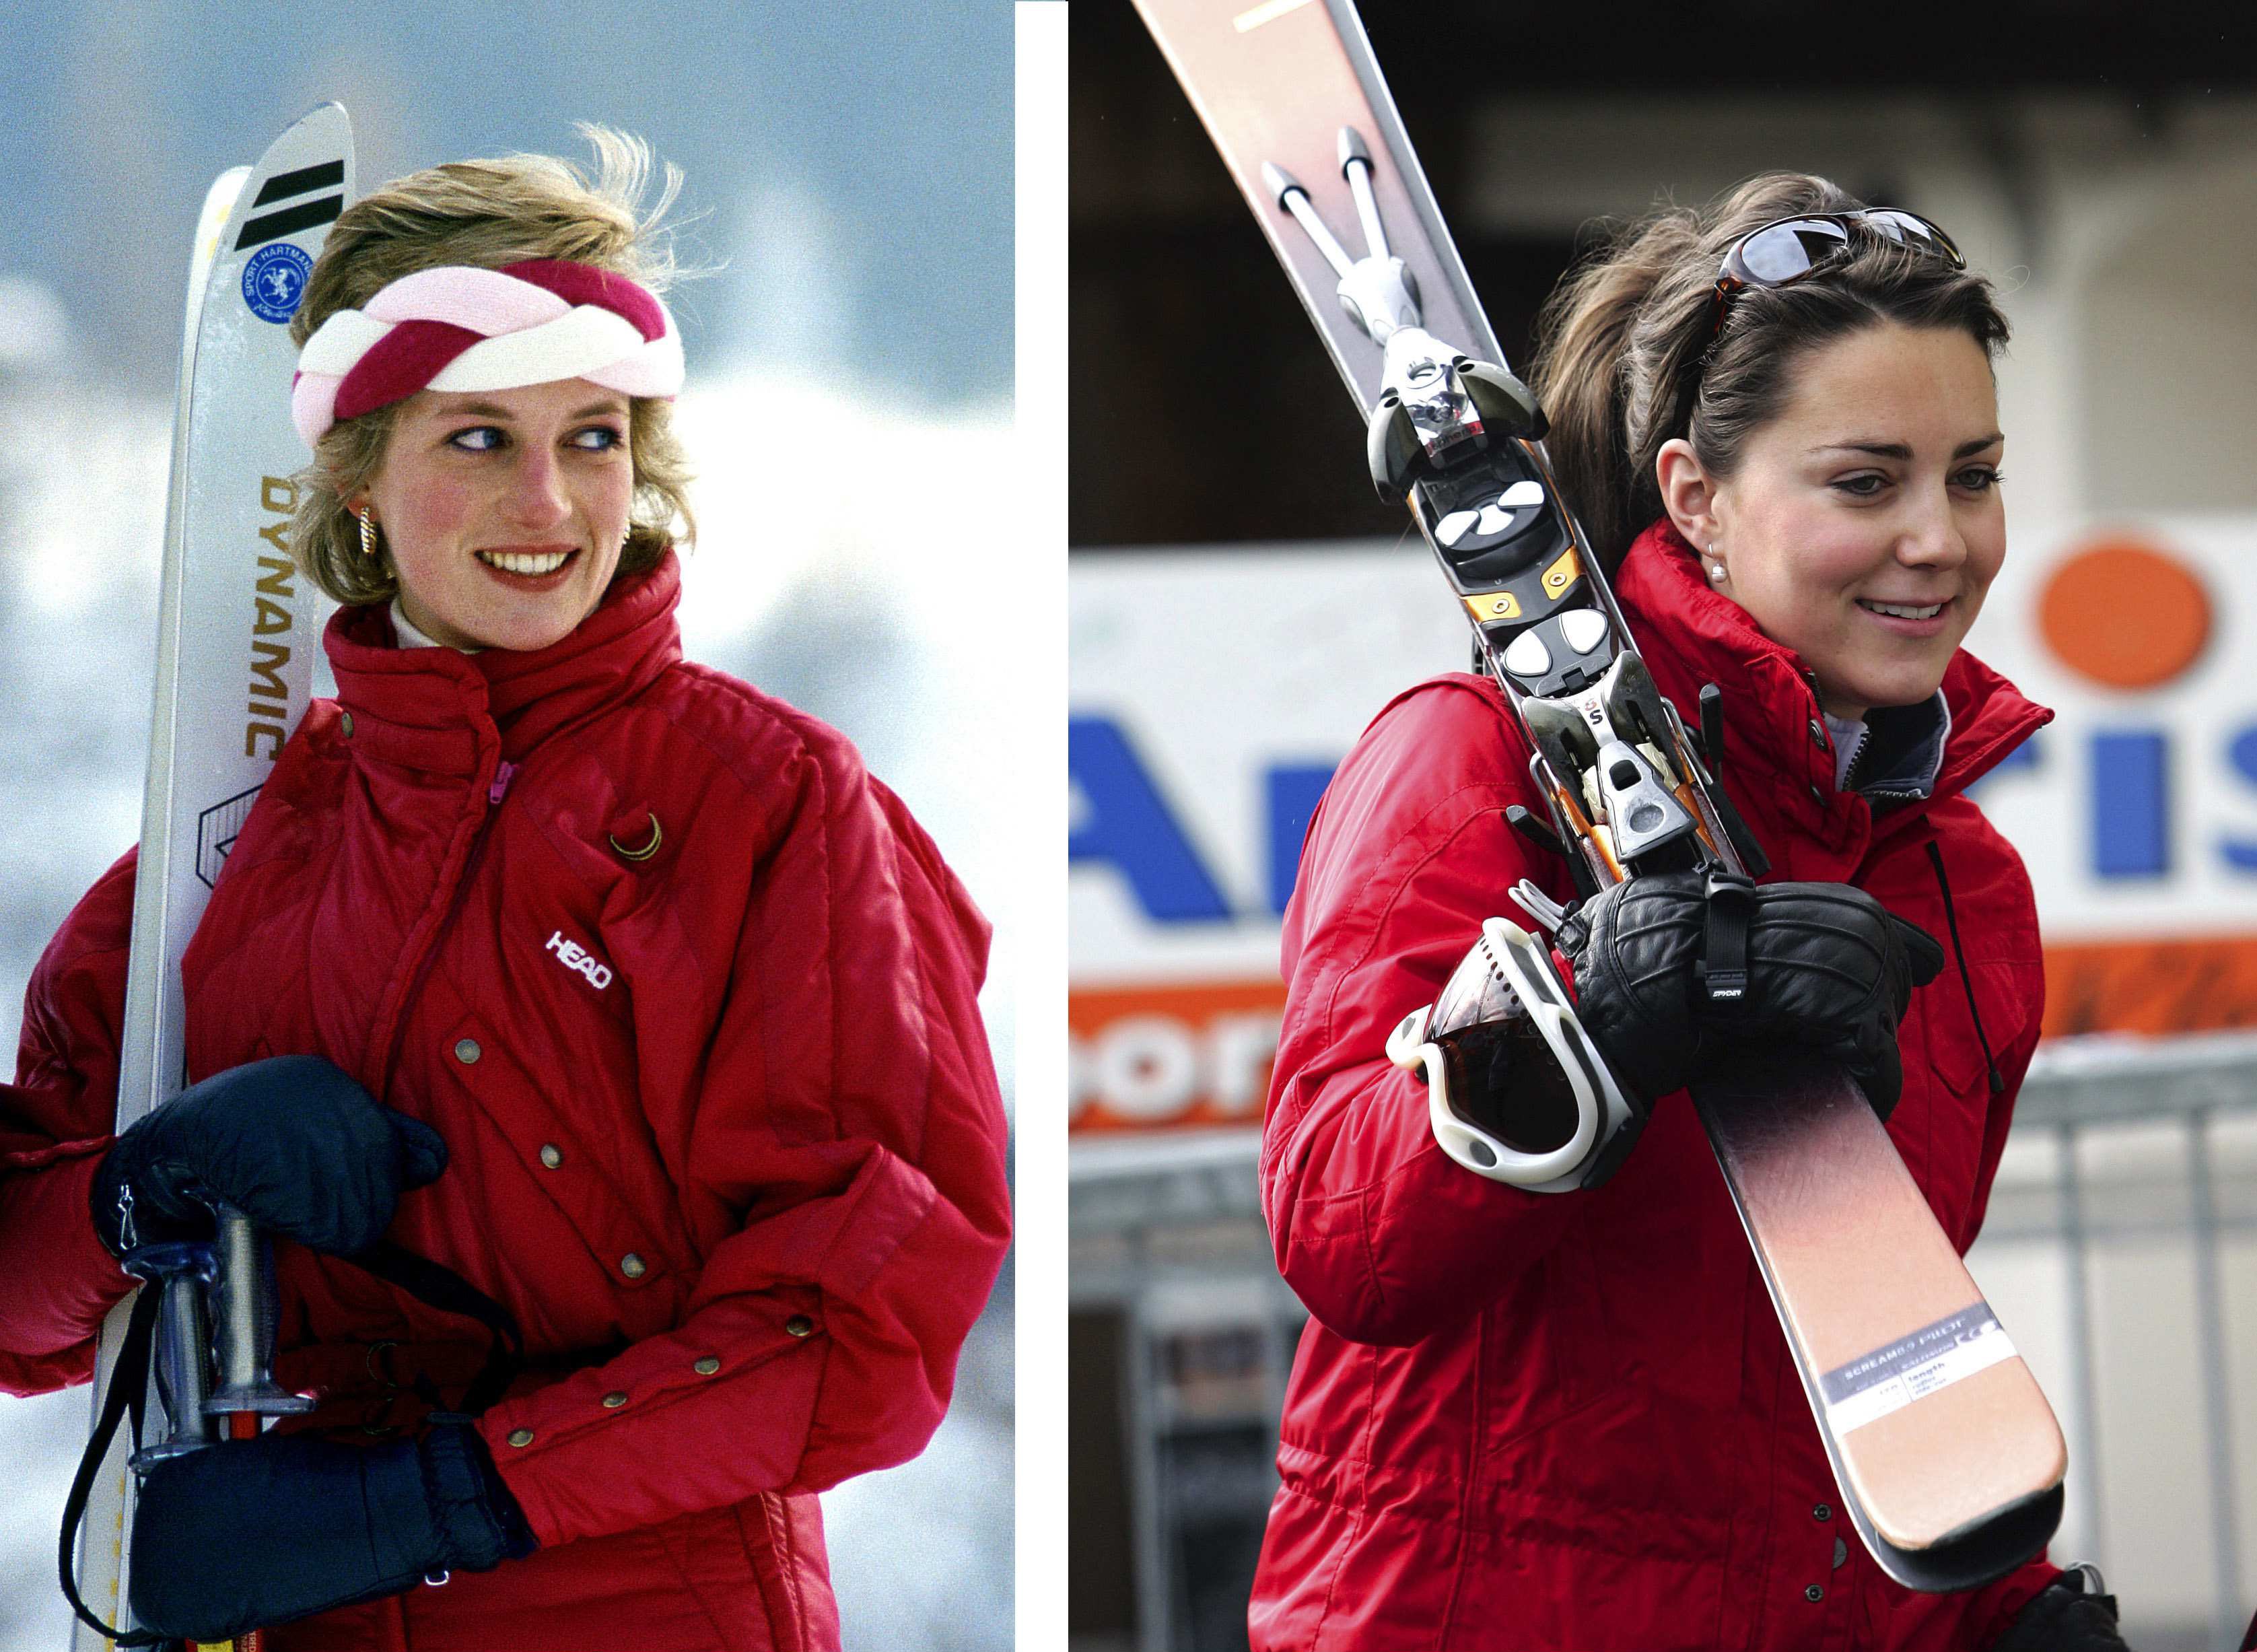 Princesa Diana en Suiza en febrero de 1986 / Duquesa Kate en Suiza en marzo de 2005. | Foto: Getty Images